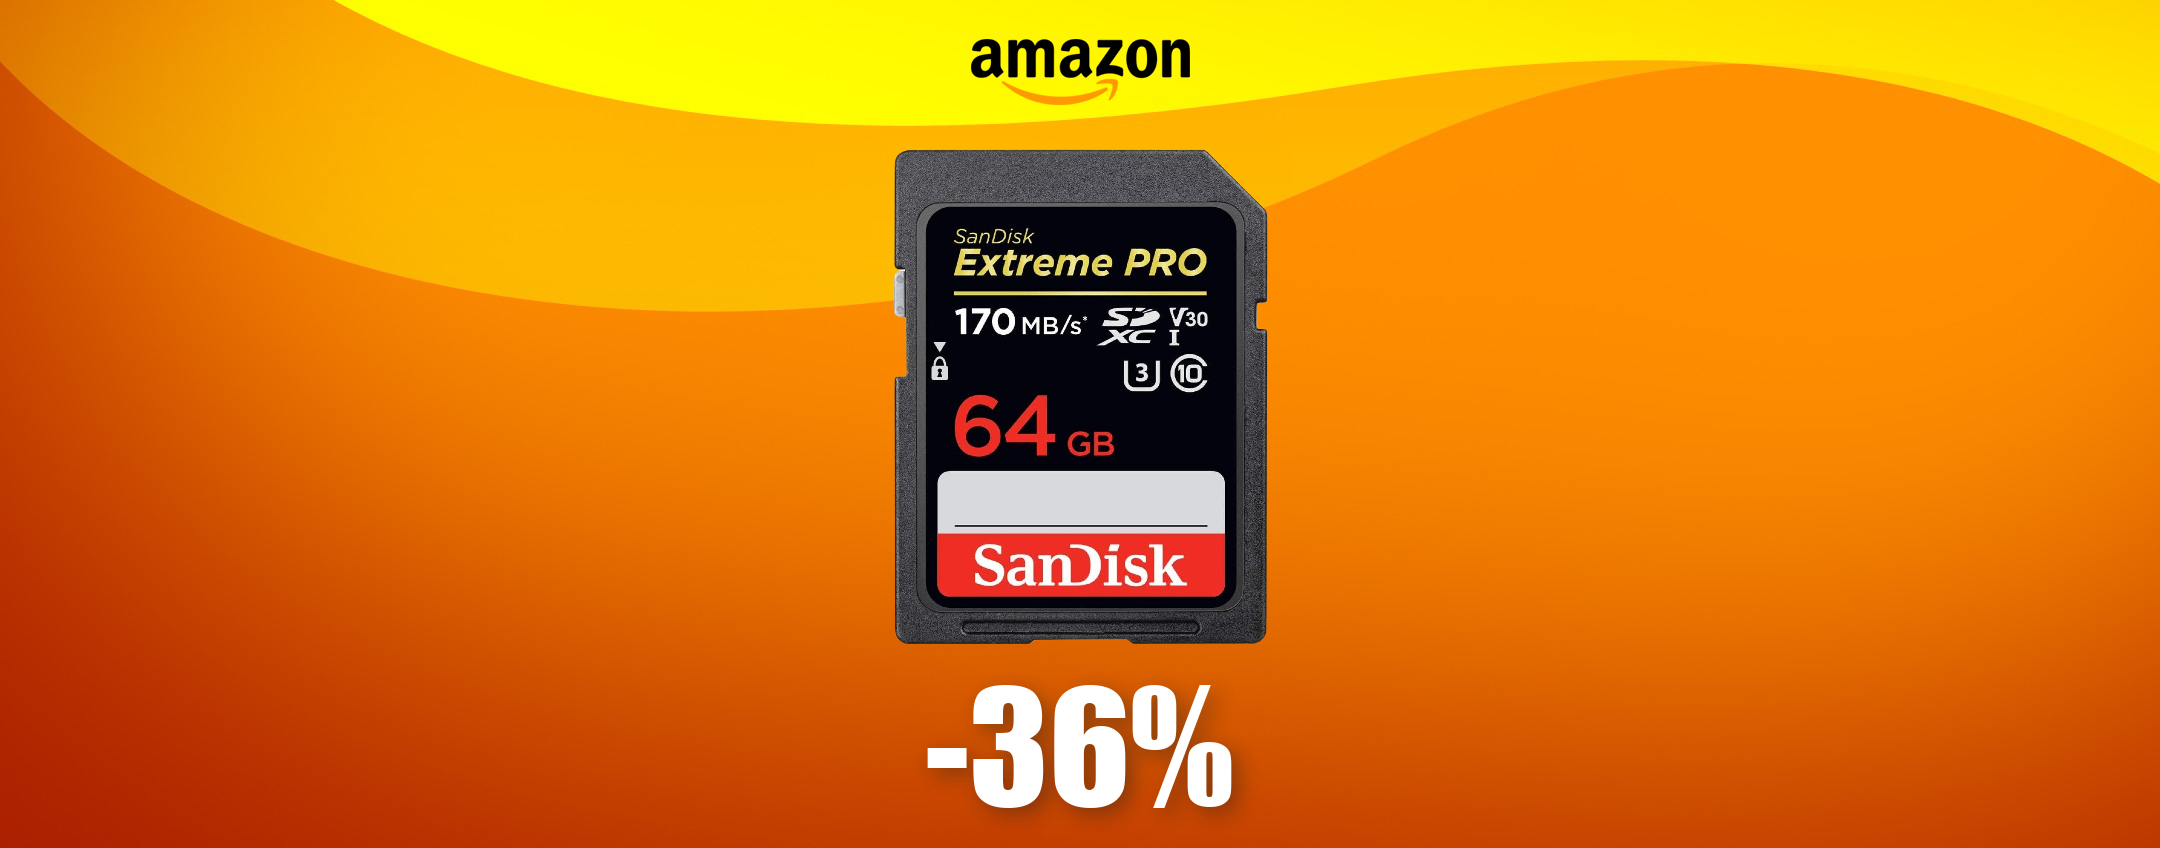 Scheda SD SanDisk da 64GB, compatta e SUPER VELOCE: bastano 22€